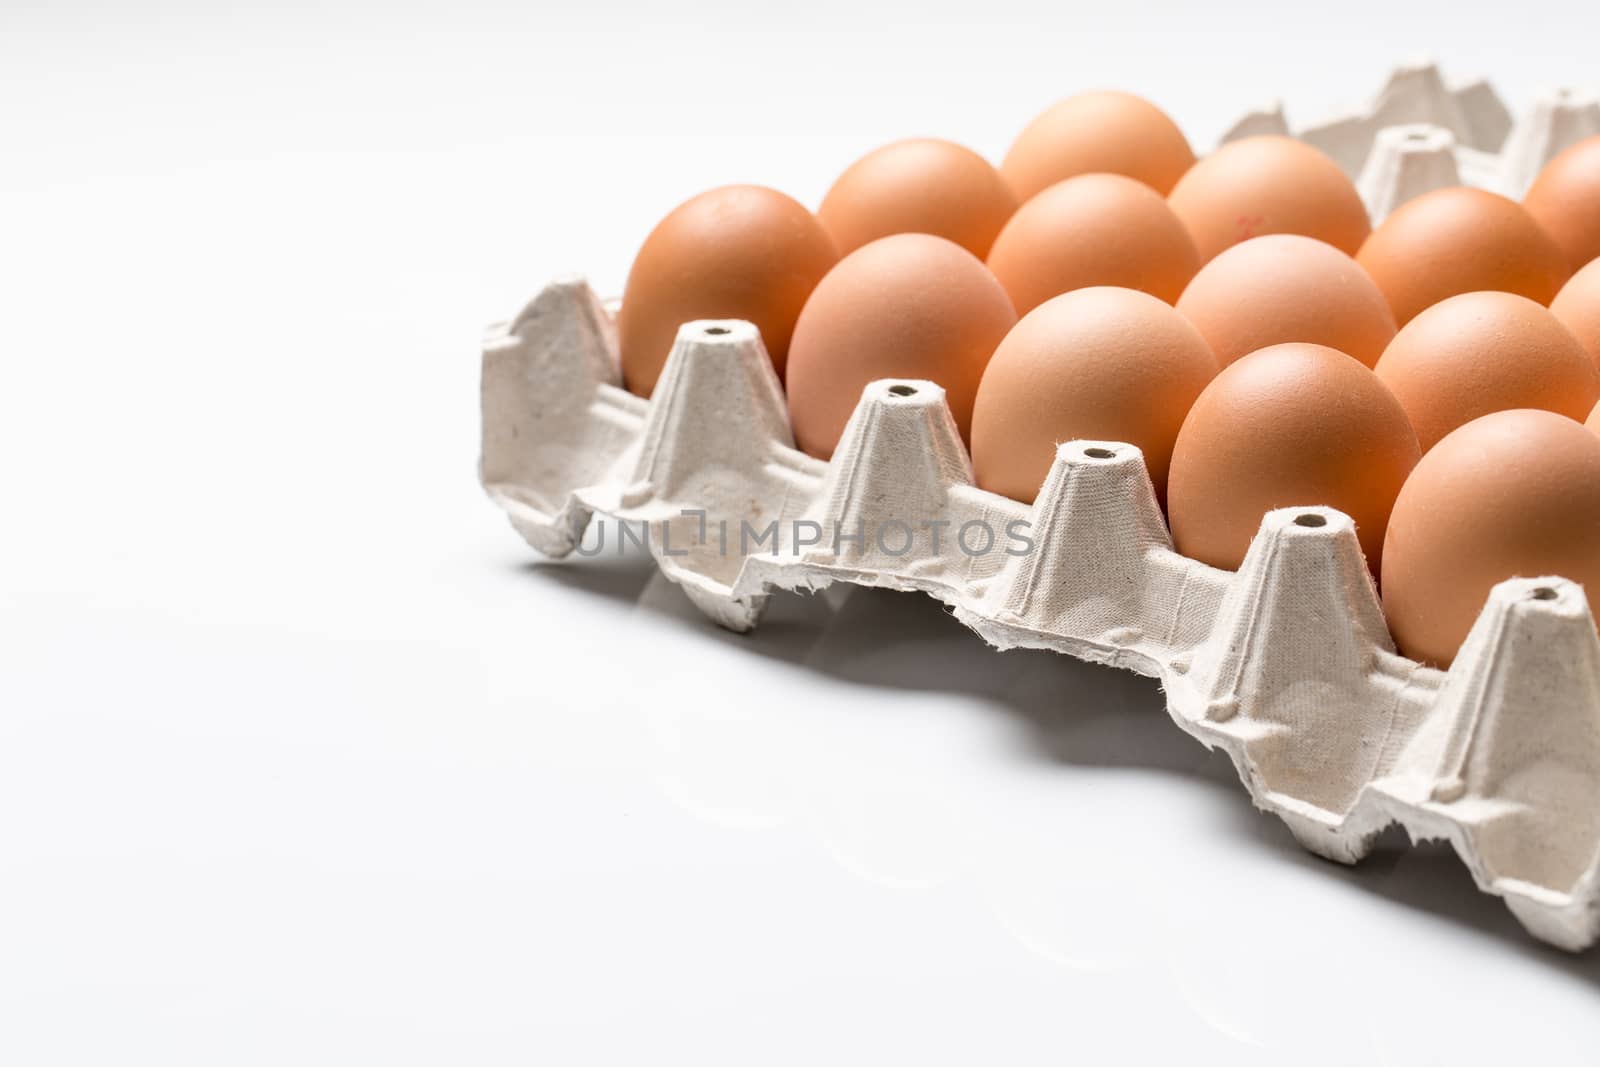 Eggs on white background by viktor_cap